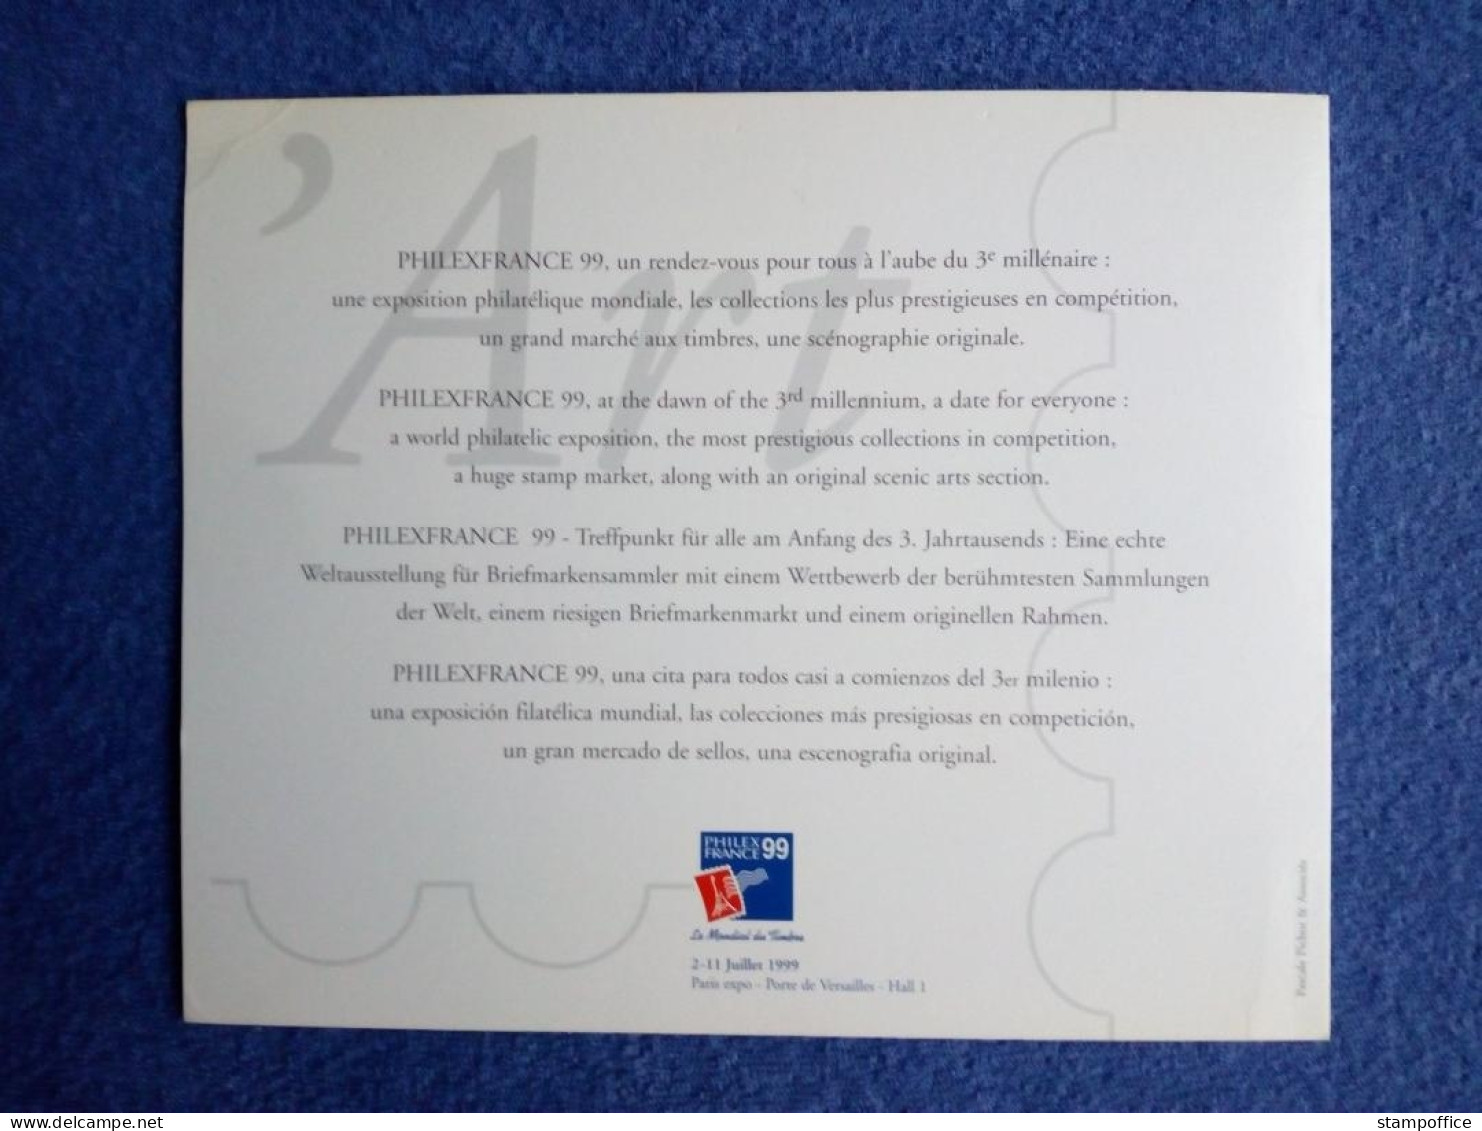 FRANKREICH BLOCK 20 POSTFRISCH(MINT) PHILEXFRANCE`99 PARIS MONA LISA DA VINCI MIT EINTRITTSKARTE - Philatelic Exhibitions